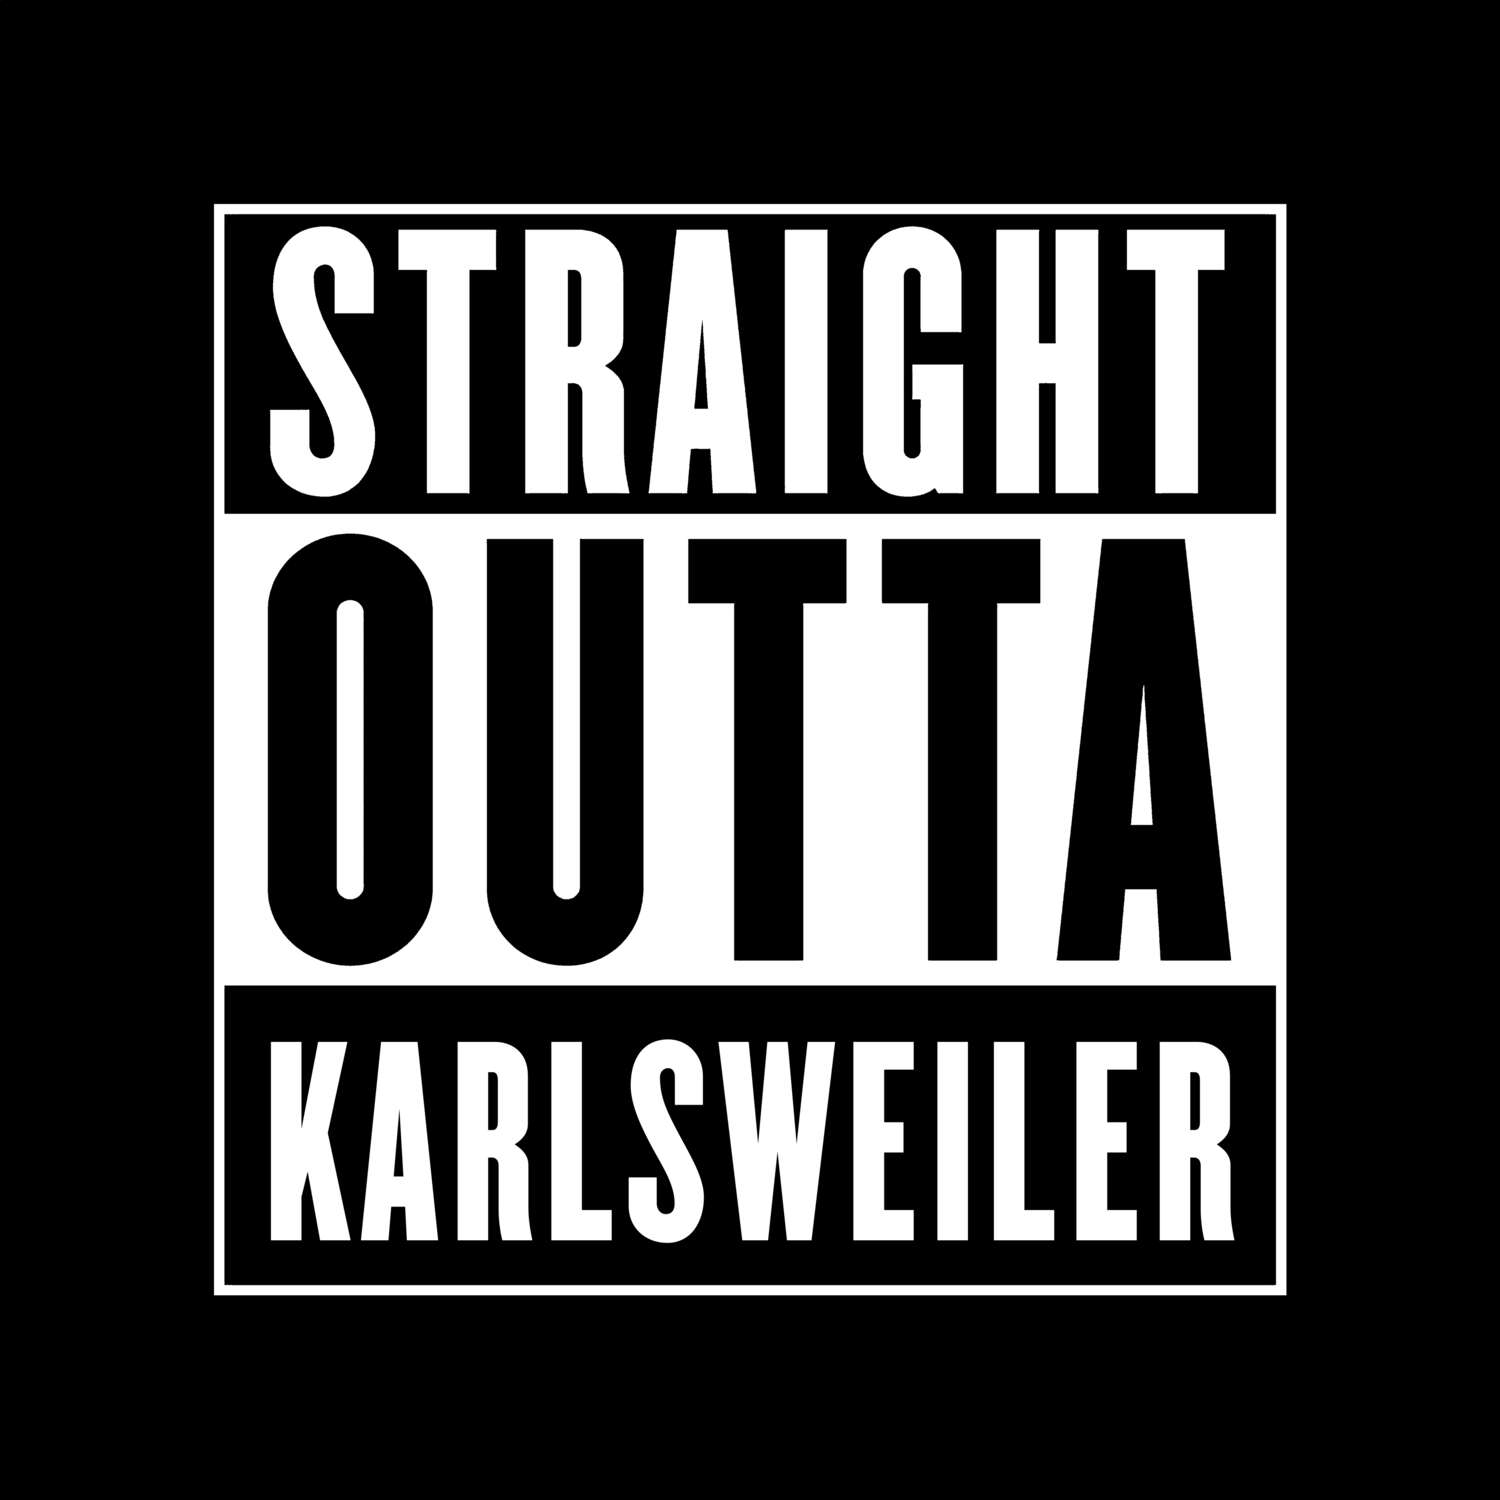 Karlsweiler T-Shirt »Straight Outta«